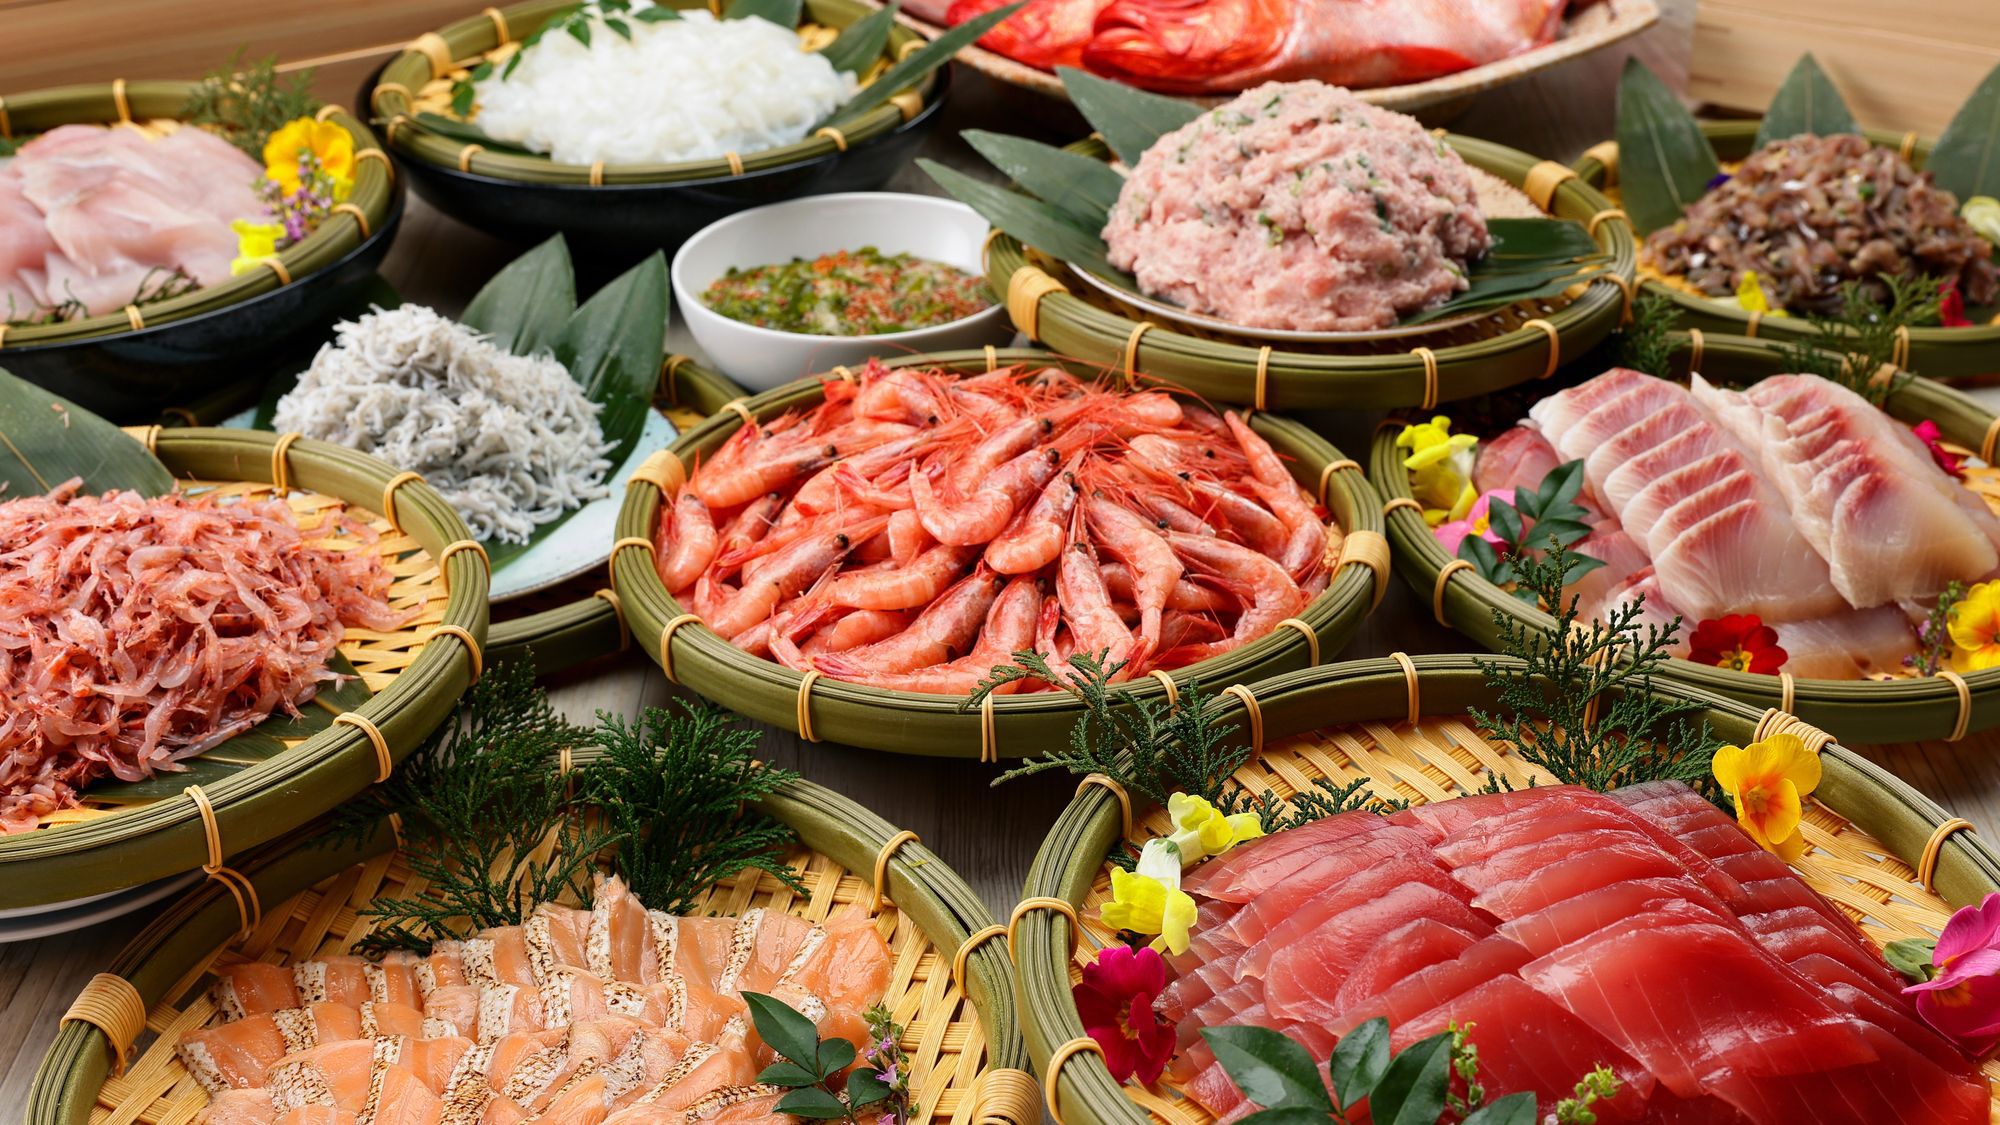 【夕食ビュッフェ】お刺身でもお楽しみいただける地魚を使った海鮮丼